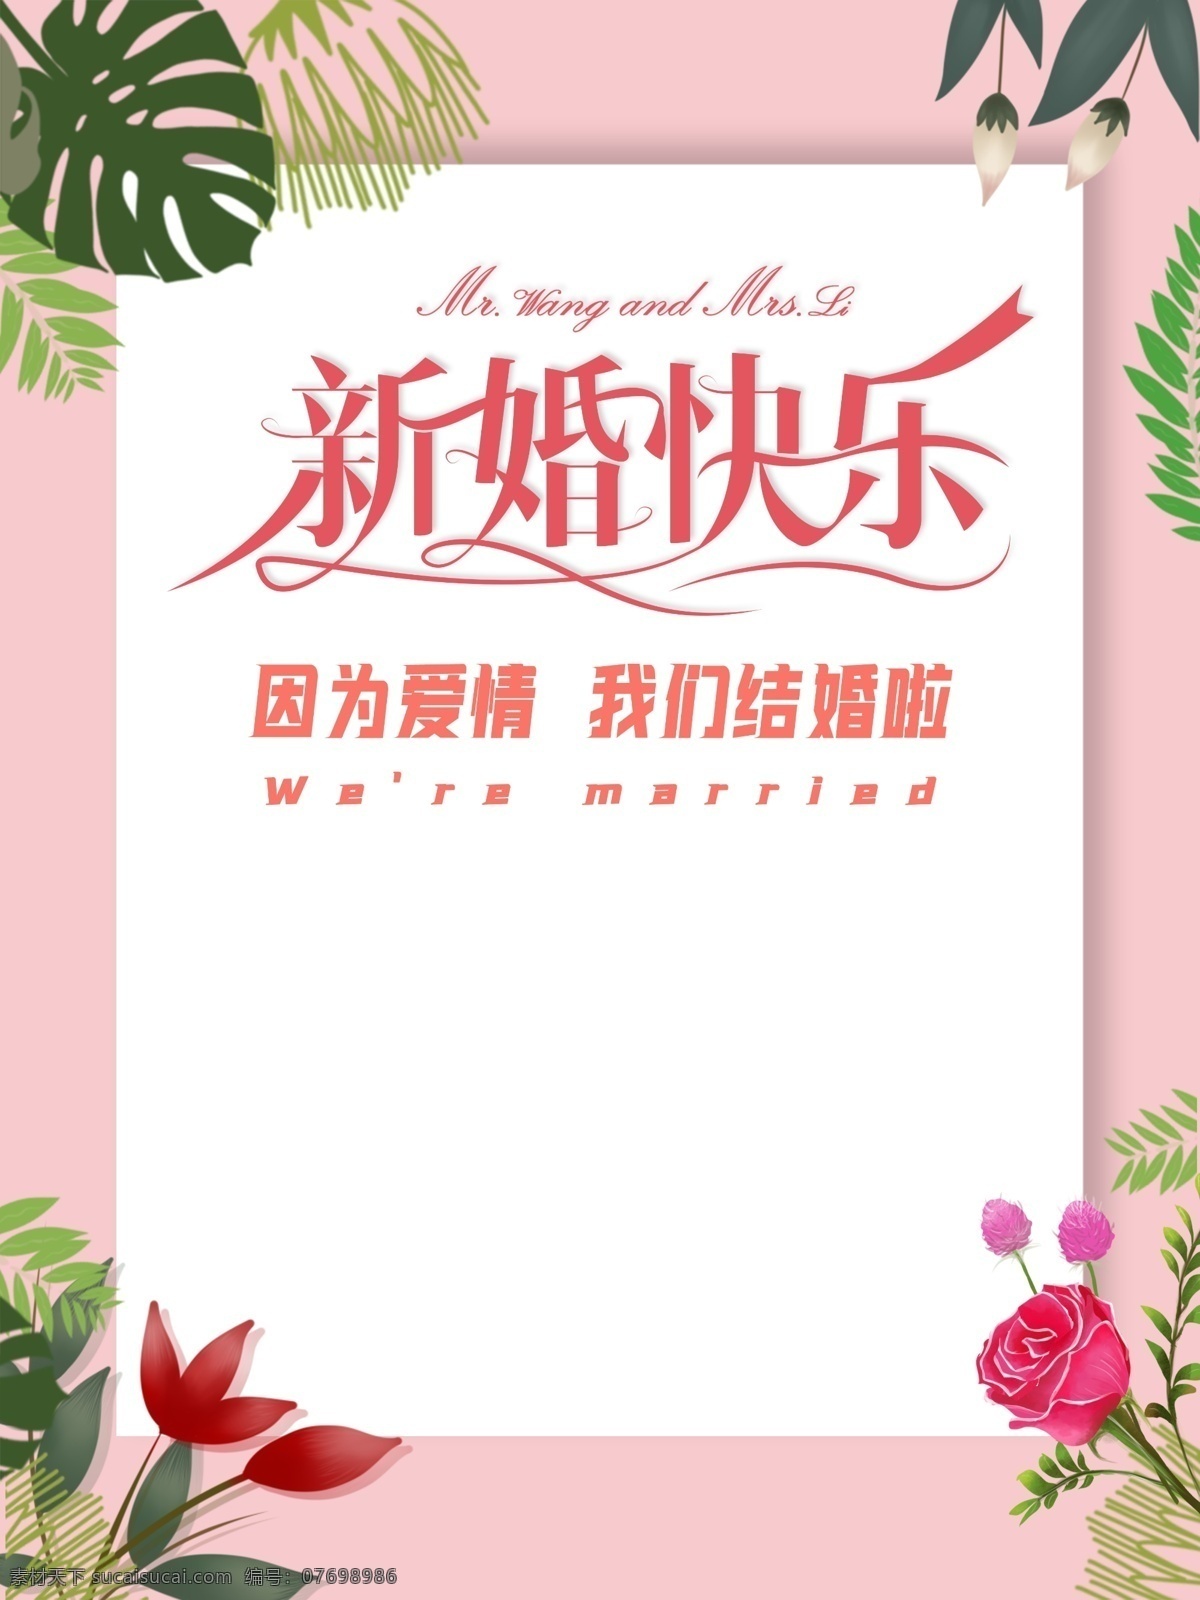 新婚海报 简约 清新 婚礼 私人定制 鲜花